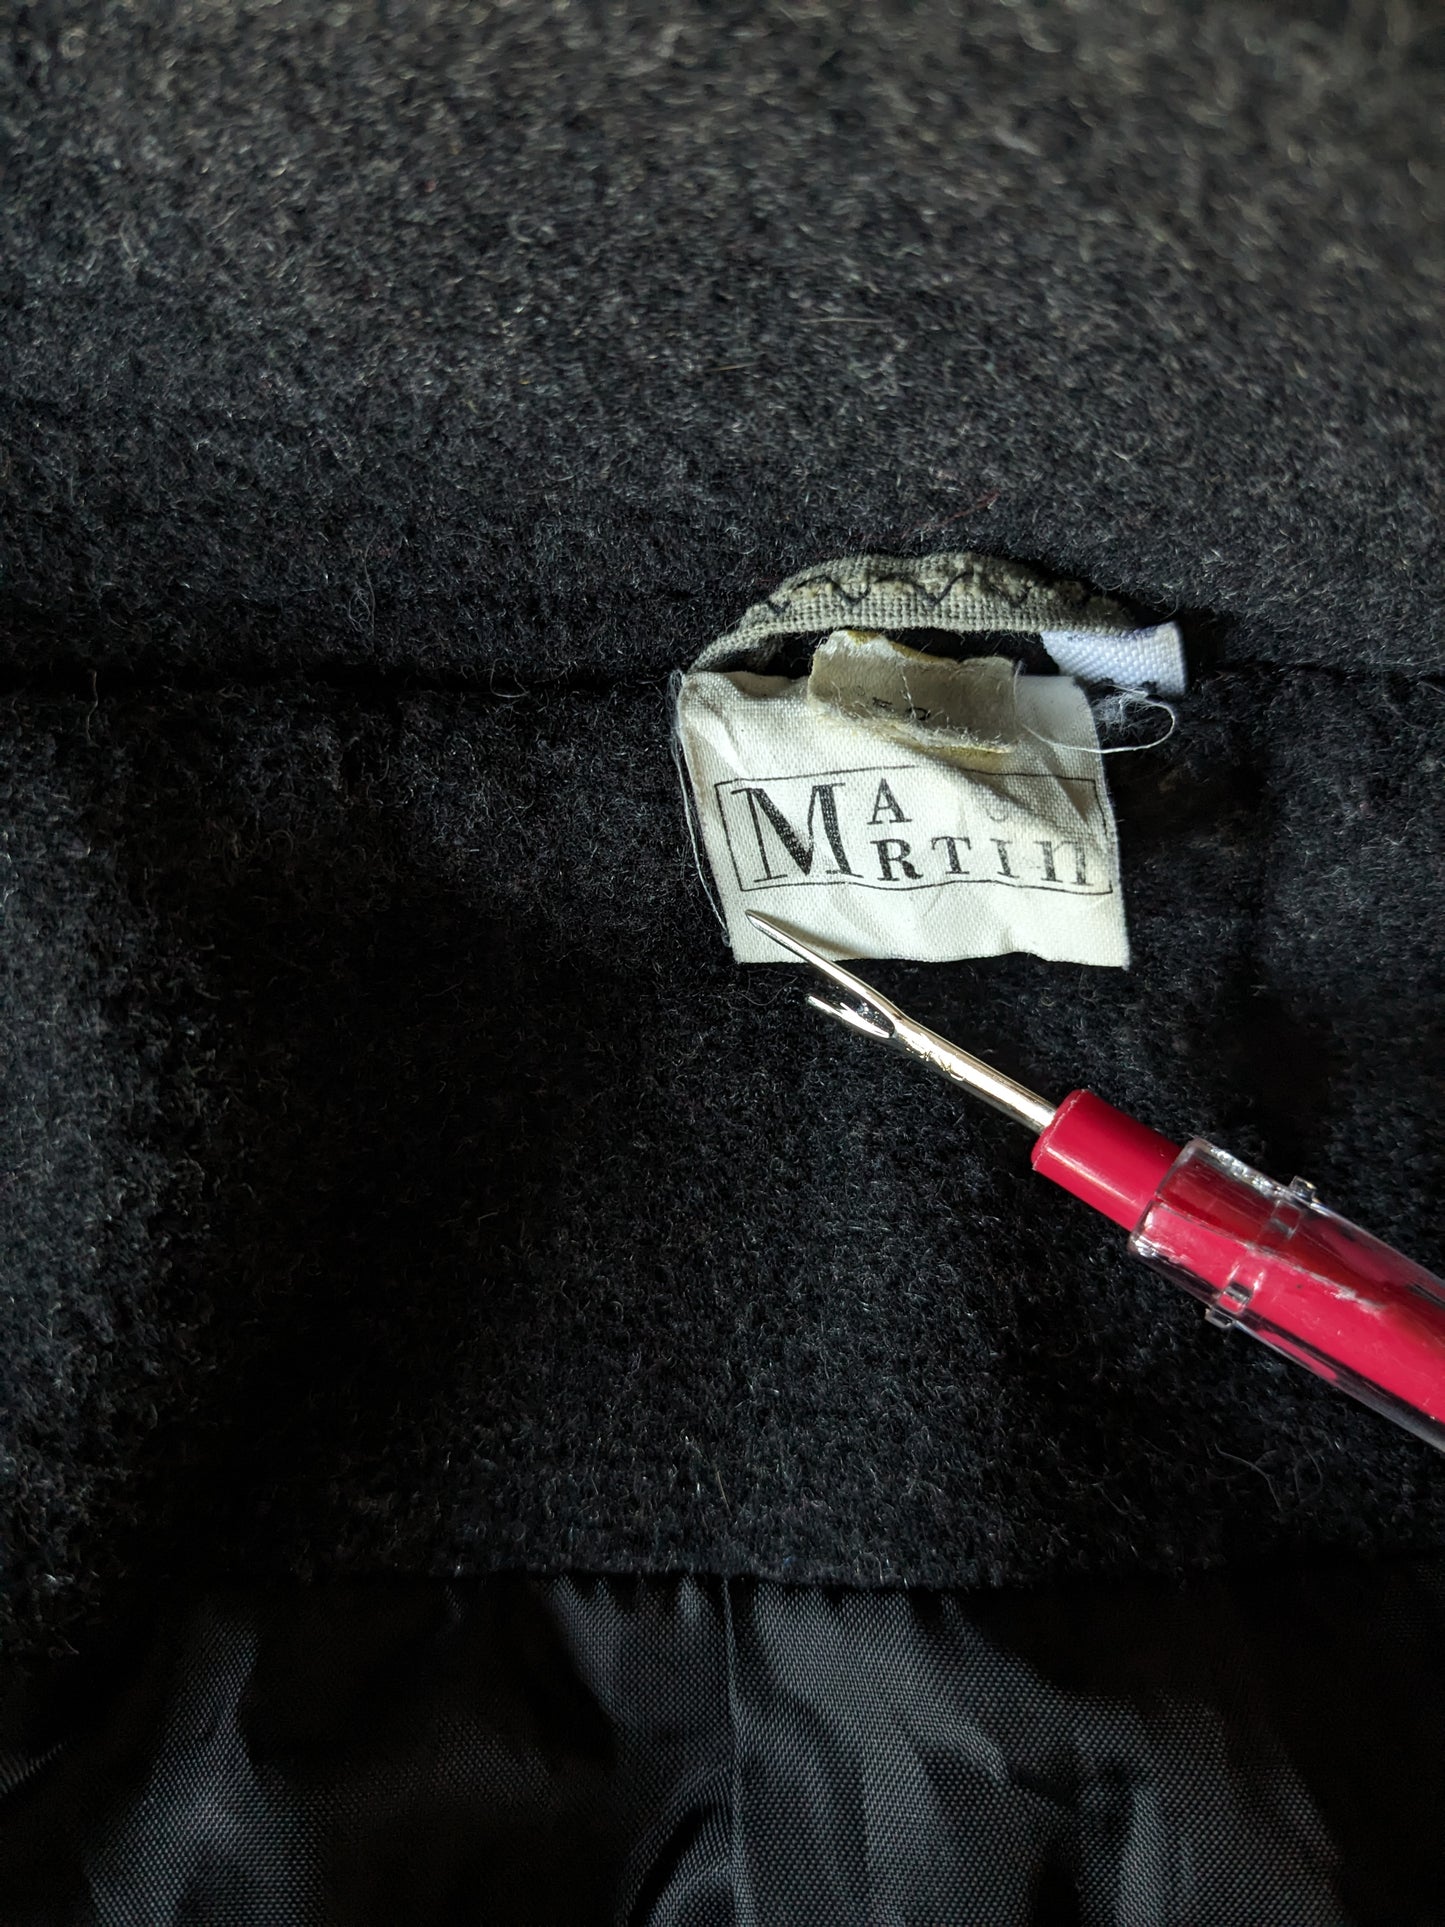 Separe una chaqueta media larga de lana Martin con botones y aplicaciones de cremallera. Gris oscuro. Tamaño 52 / L.